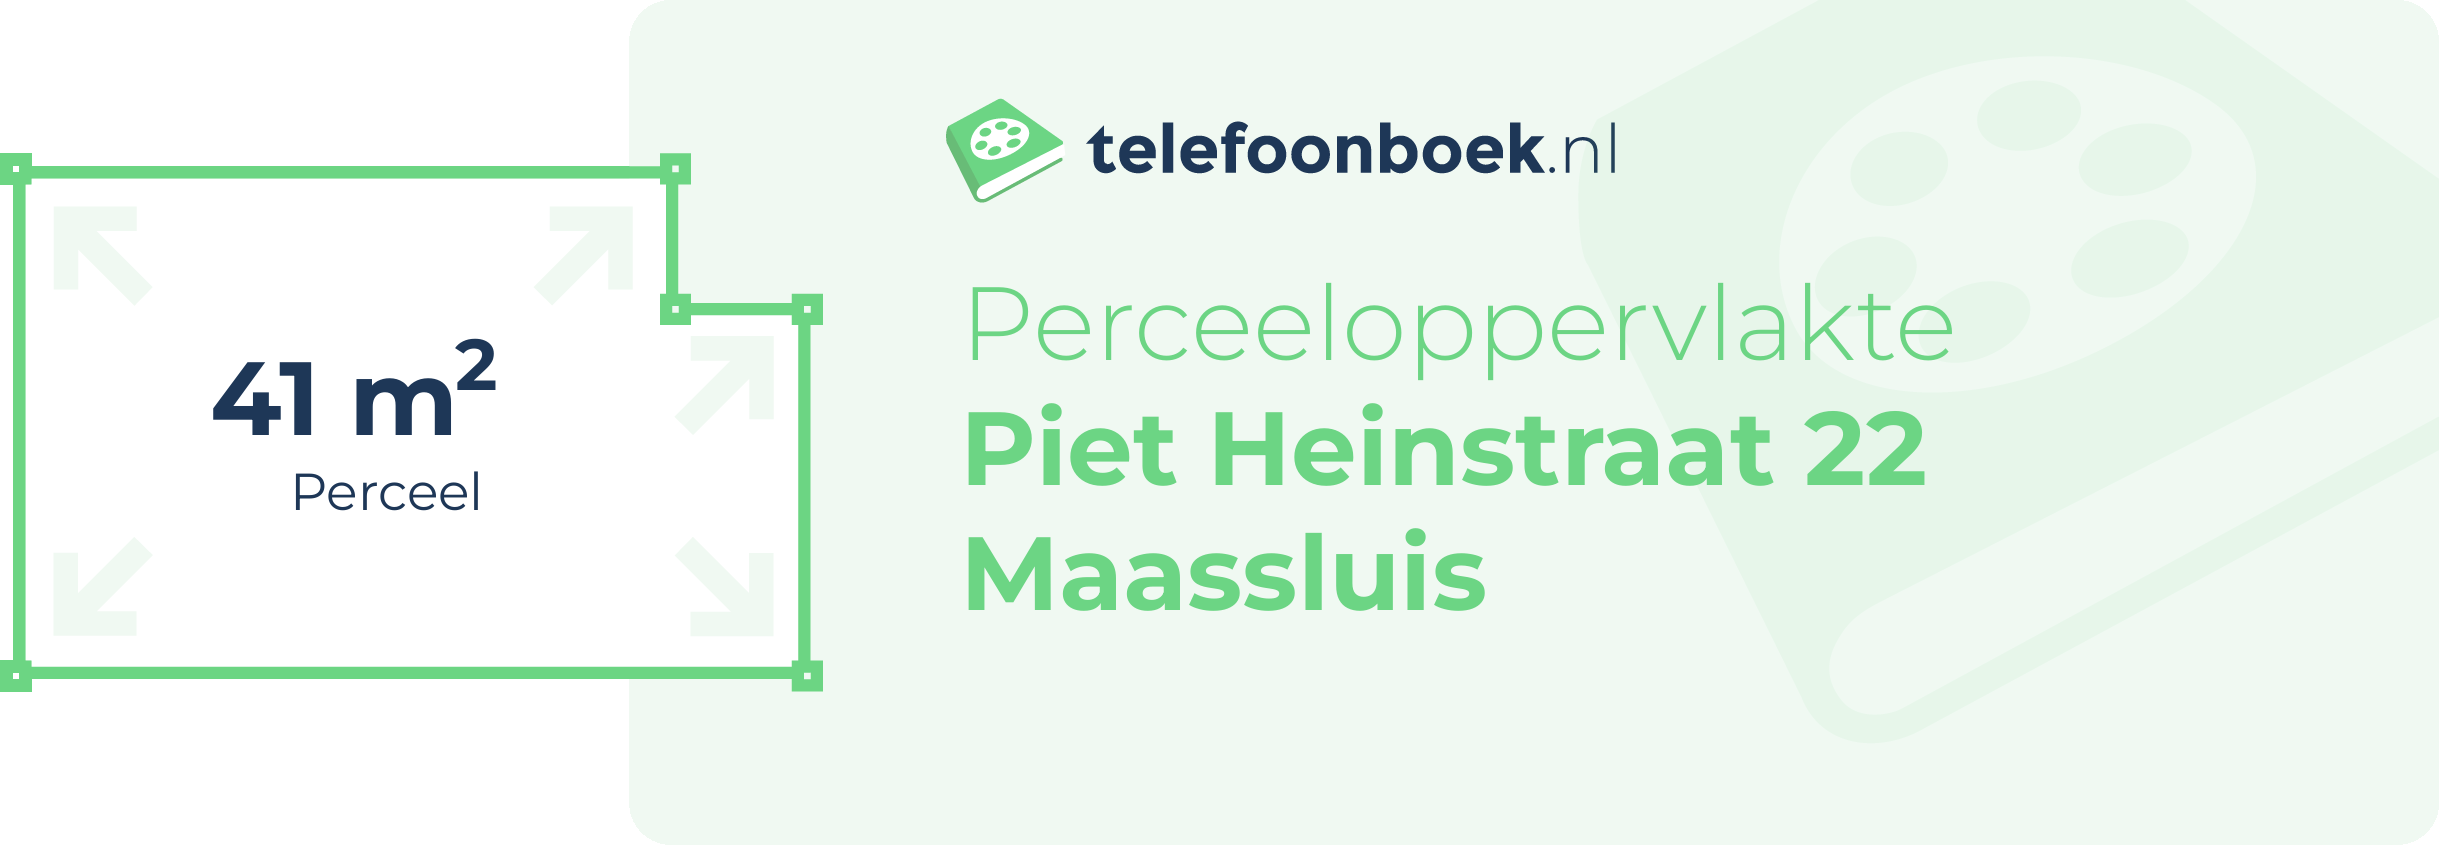 Perceeloppervlakte Piet Heinstraat 22 Maassluis